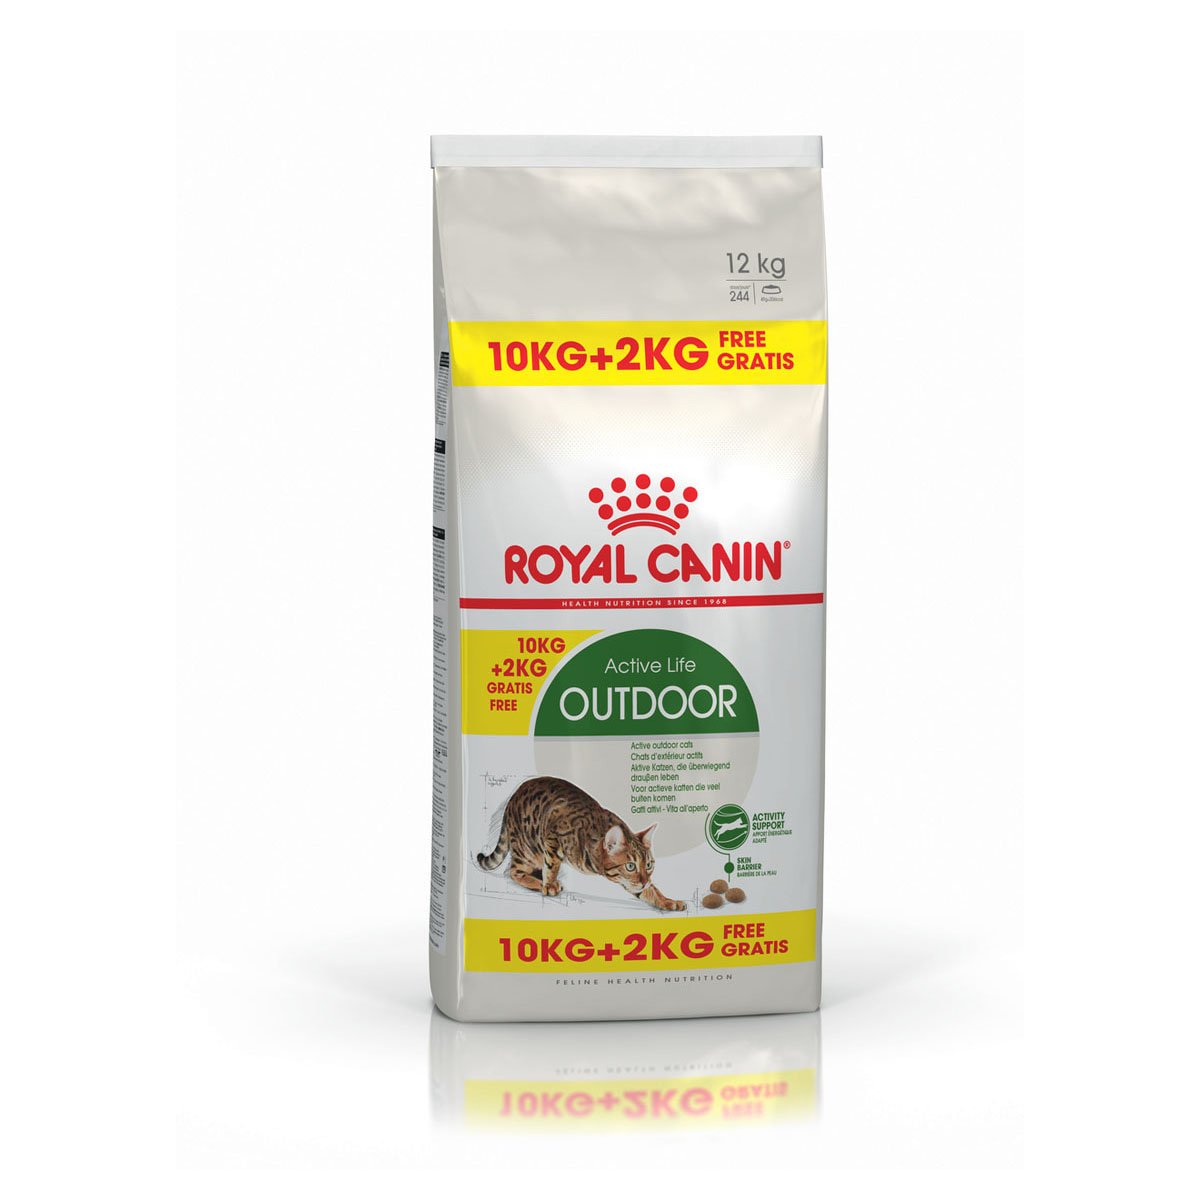 ROYAL CANIN OUTDOOR Katzenfutter trocken für Freigänger 10kg+2kg gratis von Royal Canin